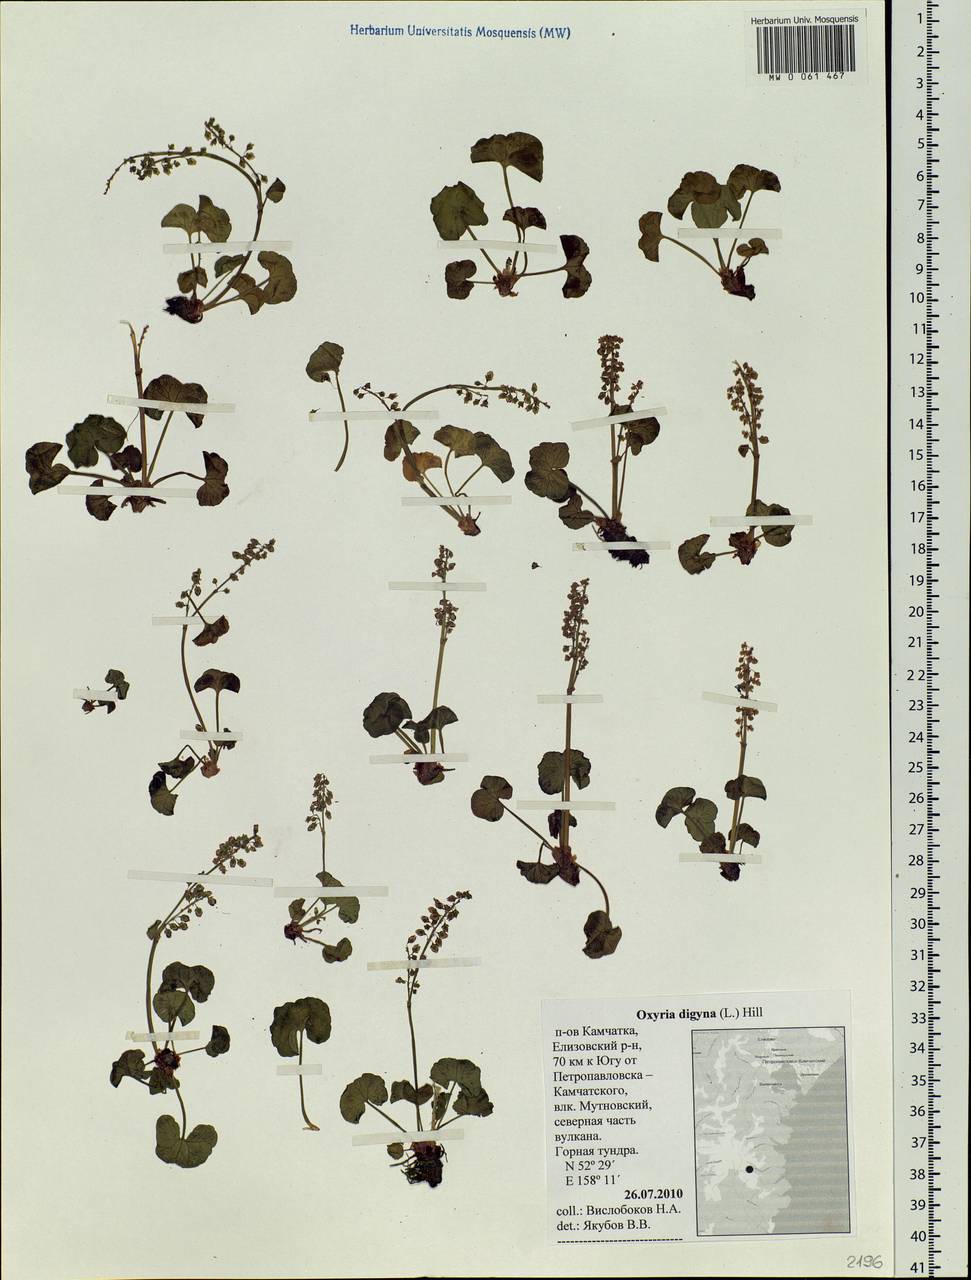 Oxyria digyna (L.) Hill, Siberia, Chukotka & Kamchatka (S7) (Russia)